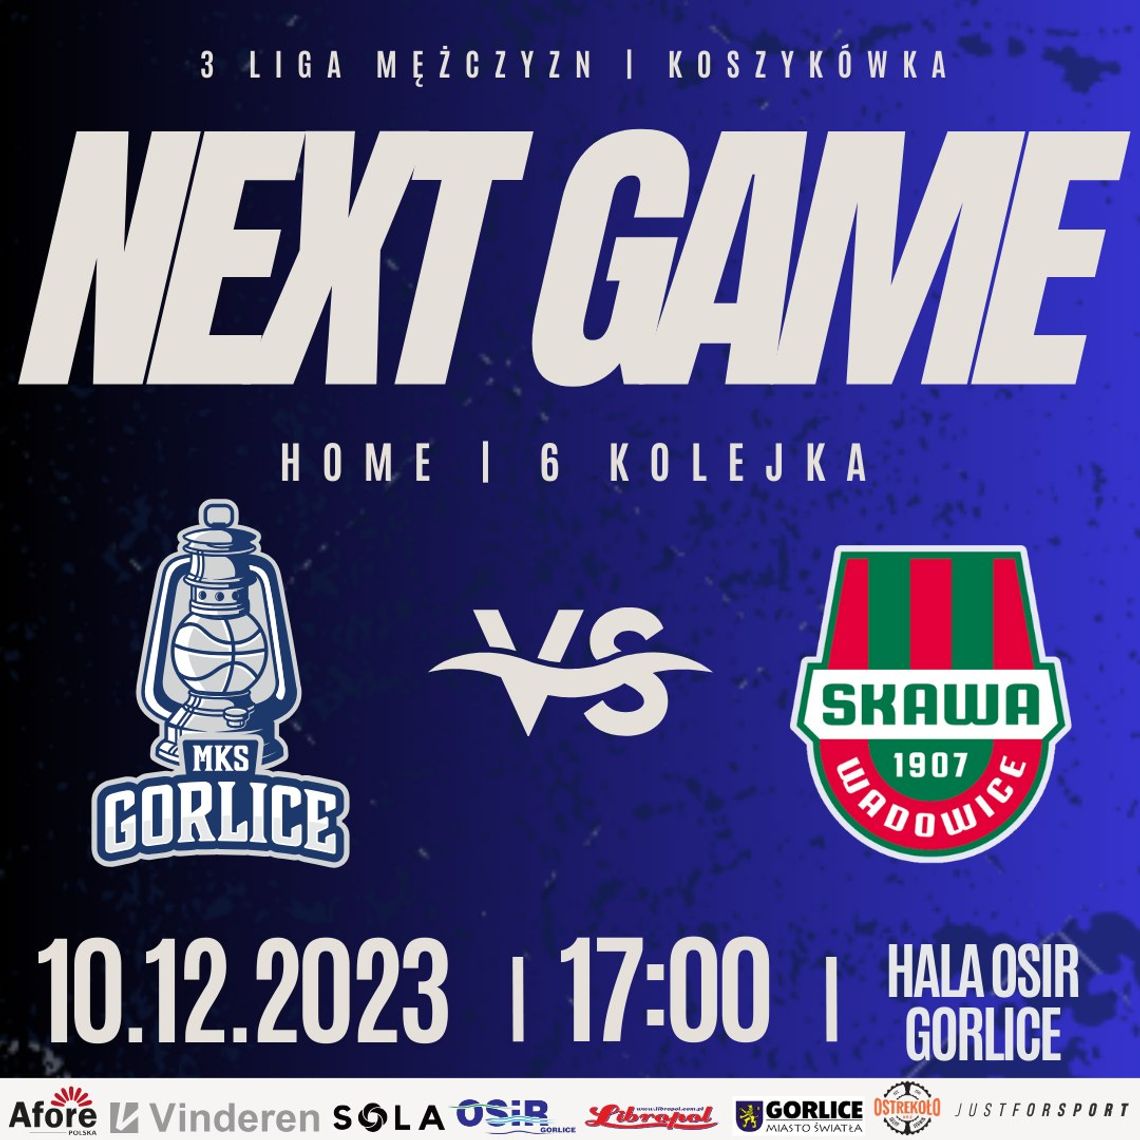 Koszykówka 3 liga mężczyzn MKS Gorlice - Skawa Wadowice | halogorlice.info